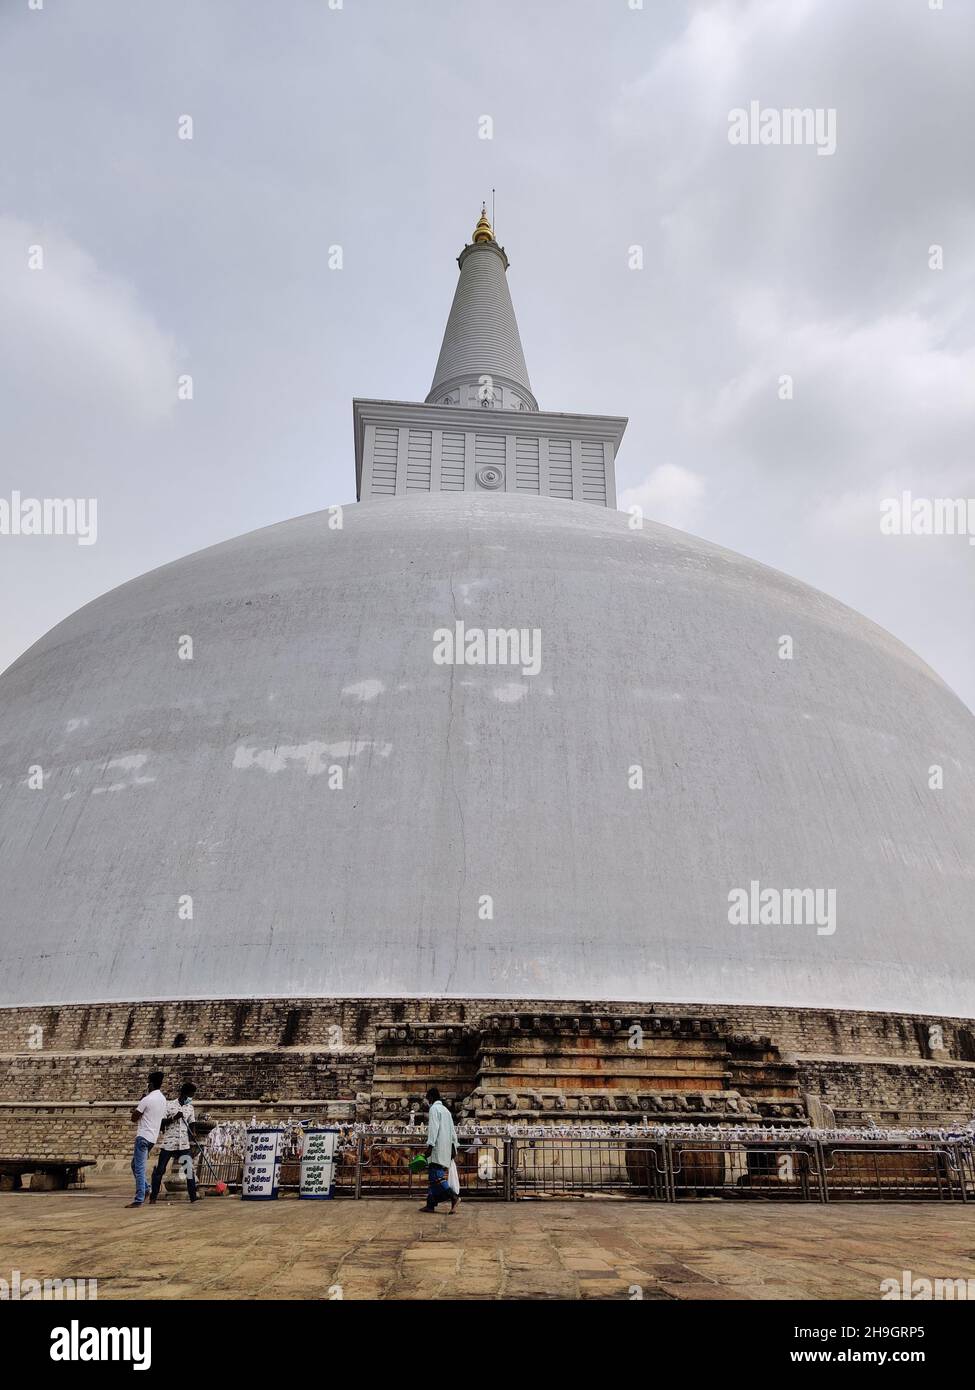 Ruwanweli Maha Seya stupa in Anuradhapura Stock Photo